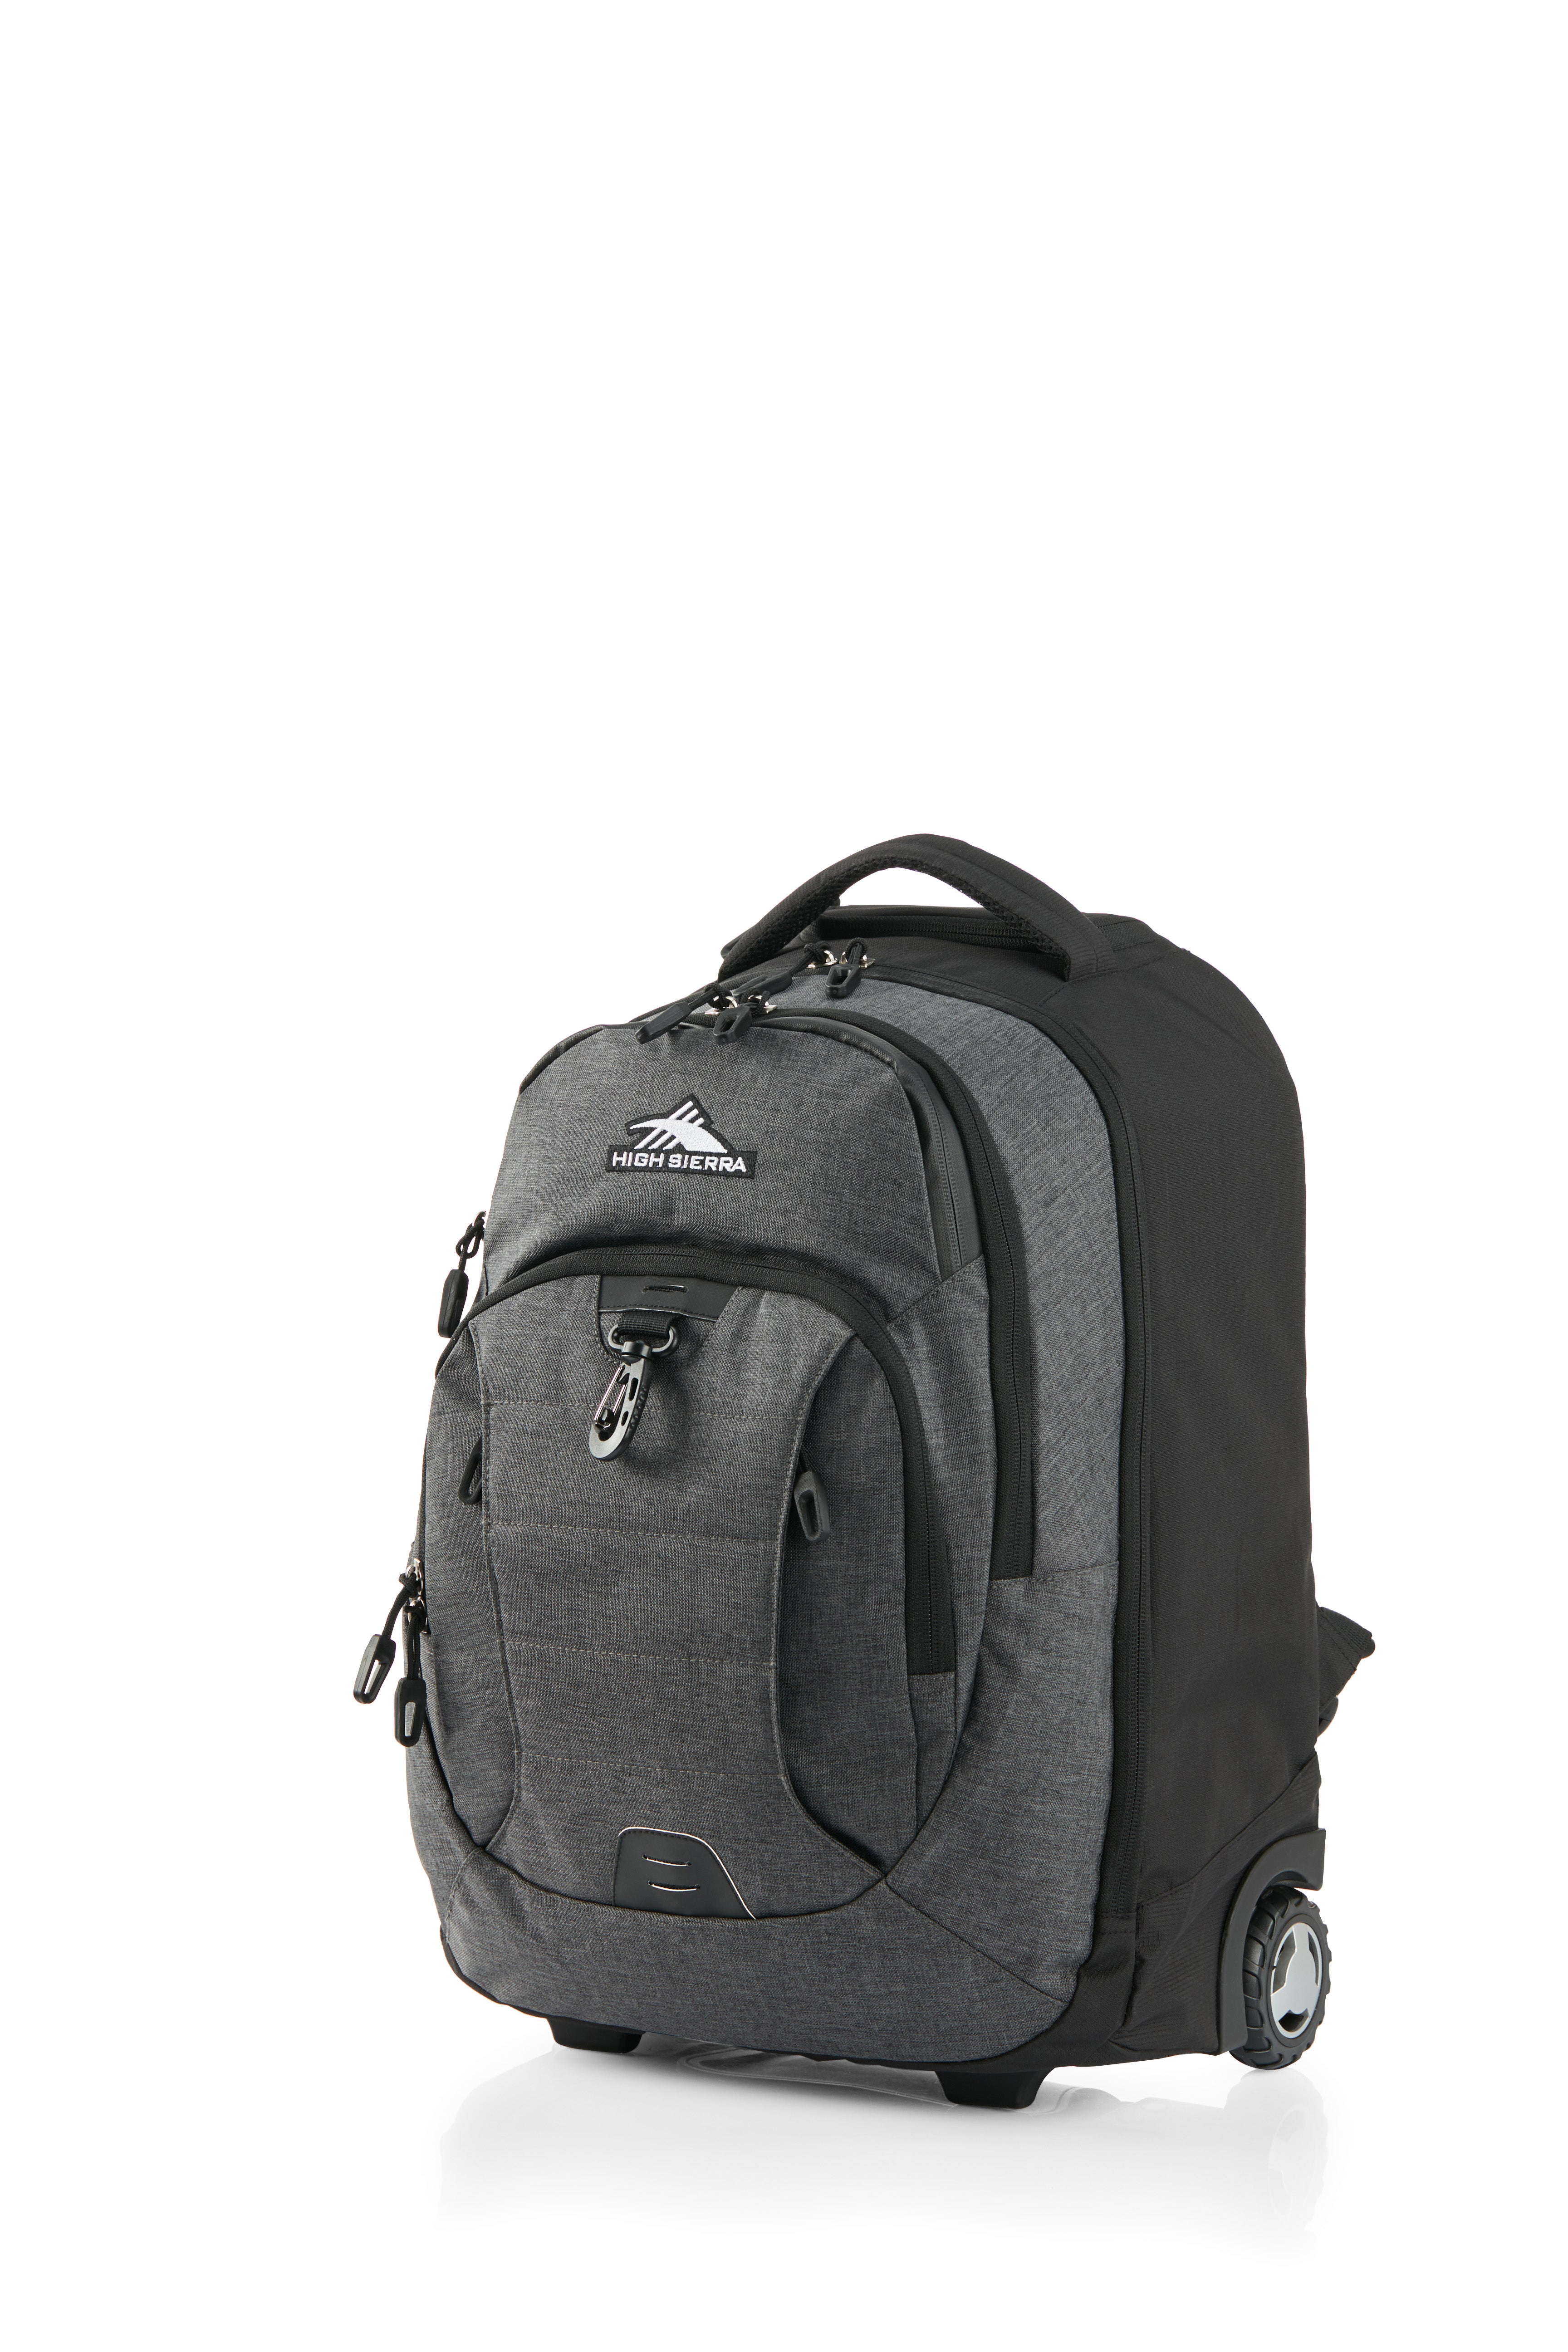 High Sierra - Jarvis Pro backpack on wheels - Black-3